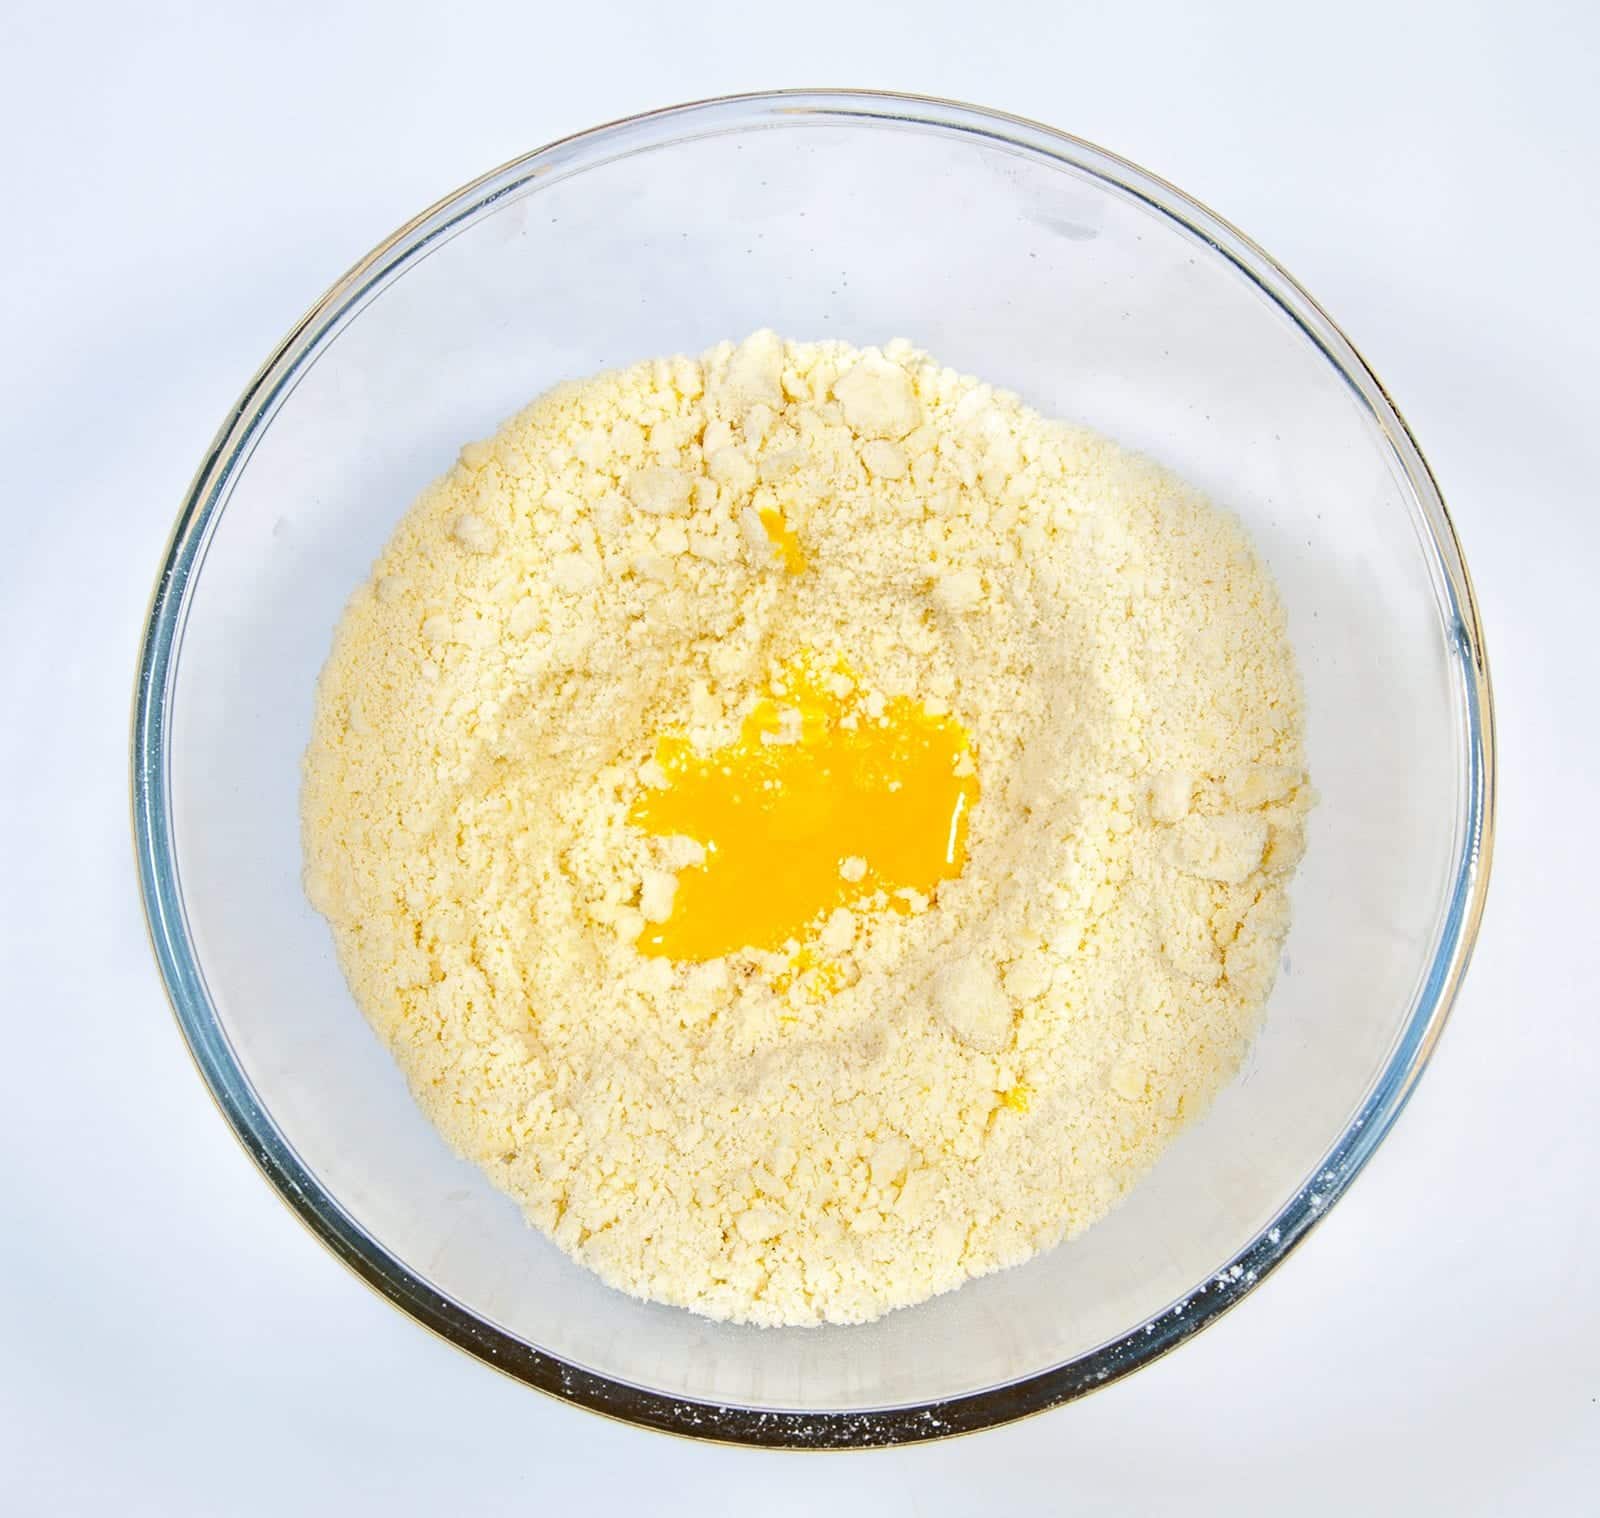 School Pudding Gypsy Tart. Add the egg yolk | https://theyumyumclub.com/2019/05/23/school-pudding-gypsy-tart/